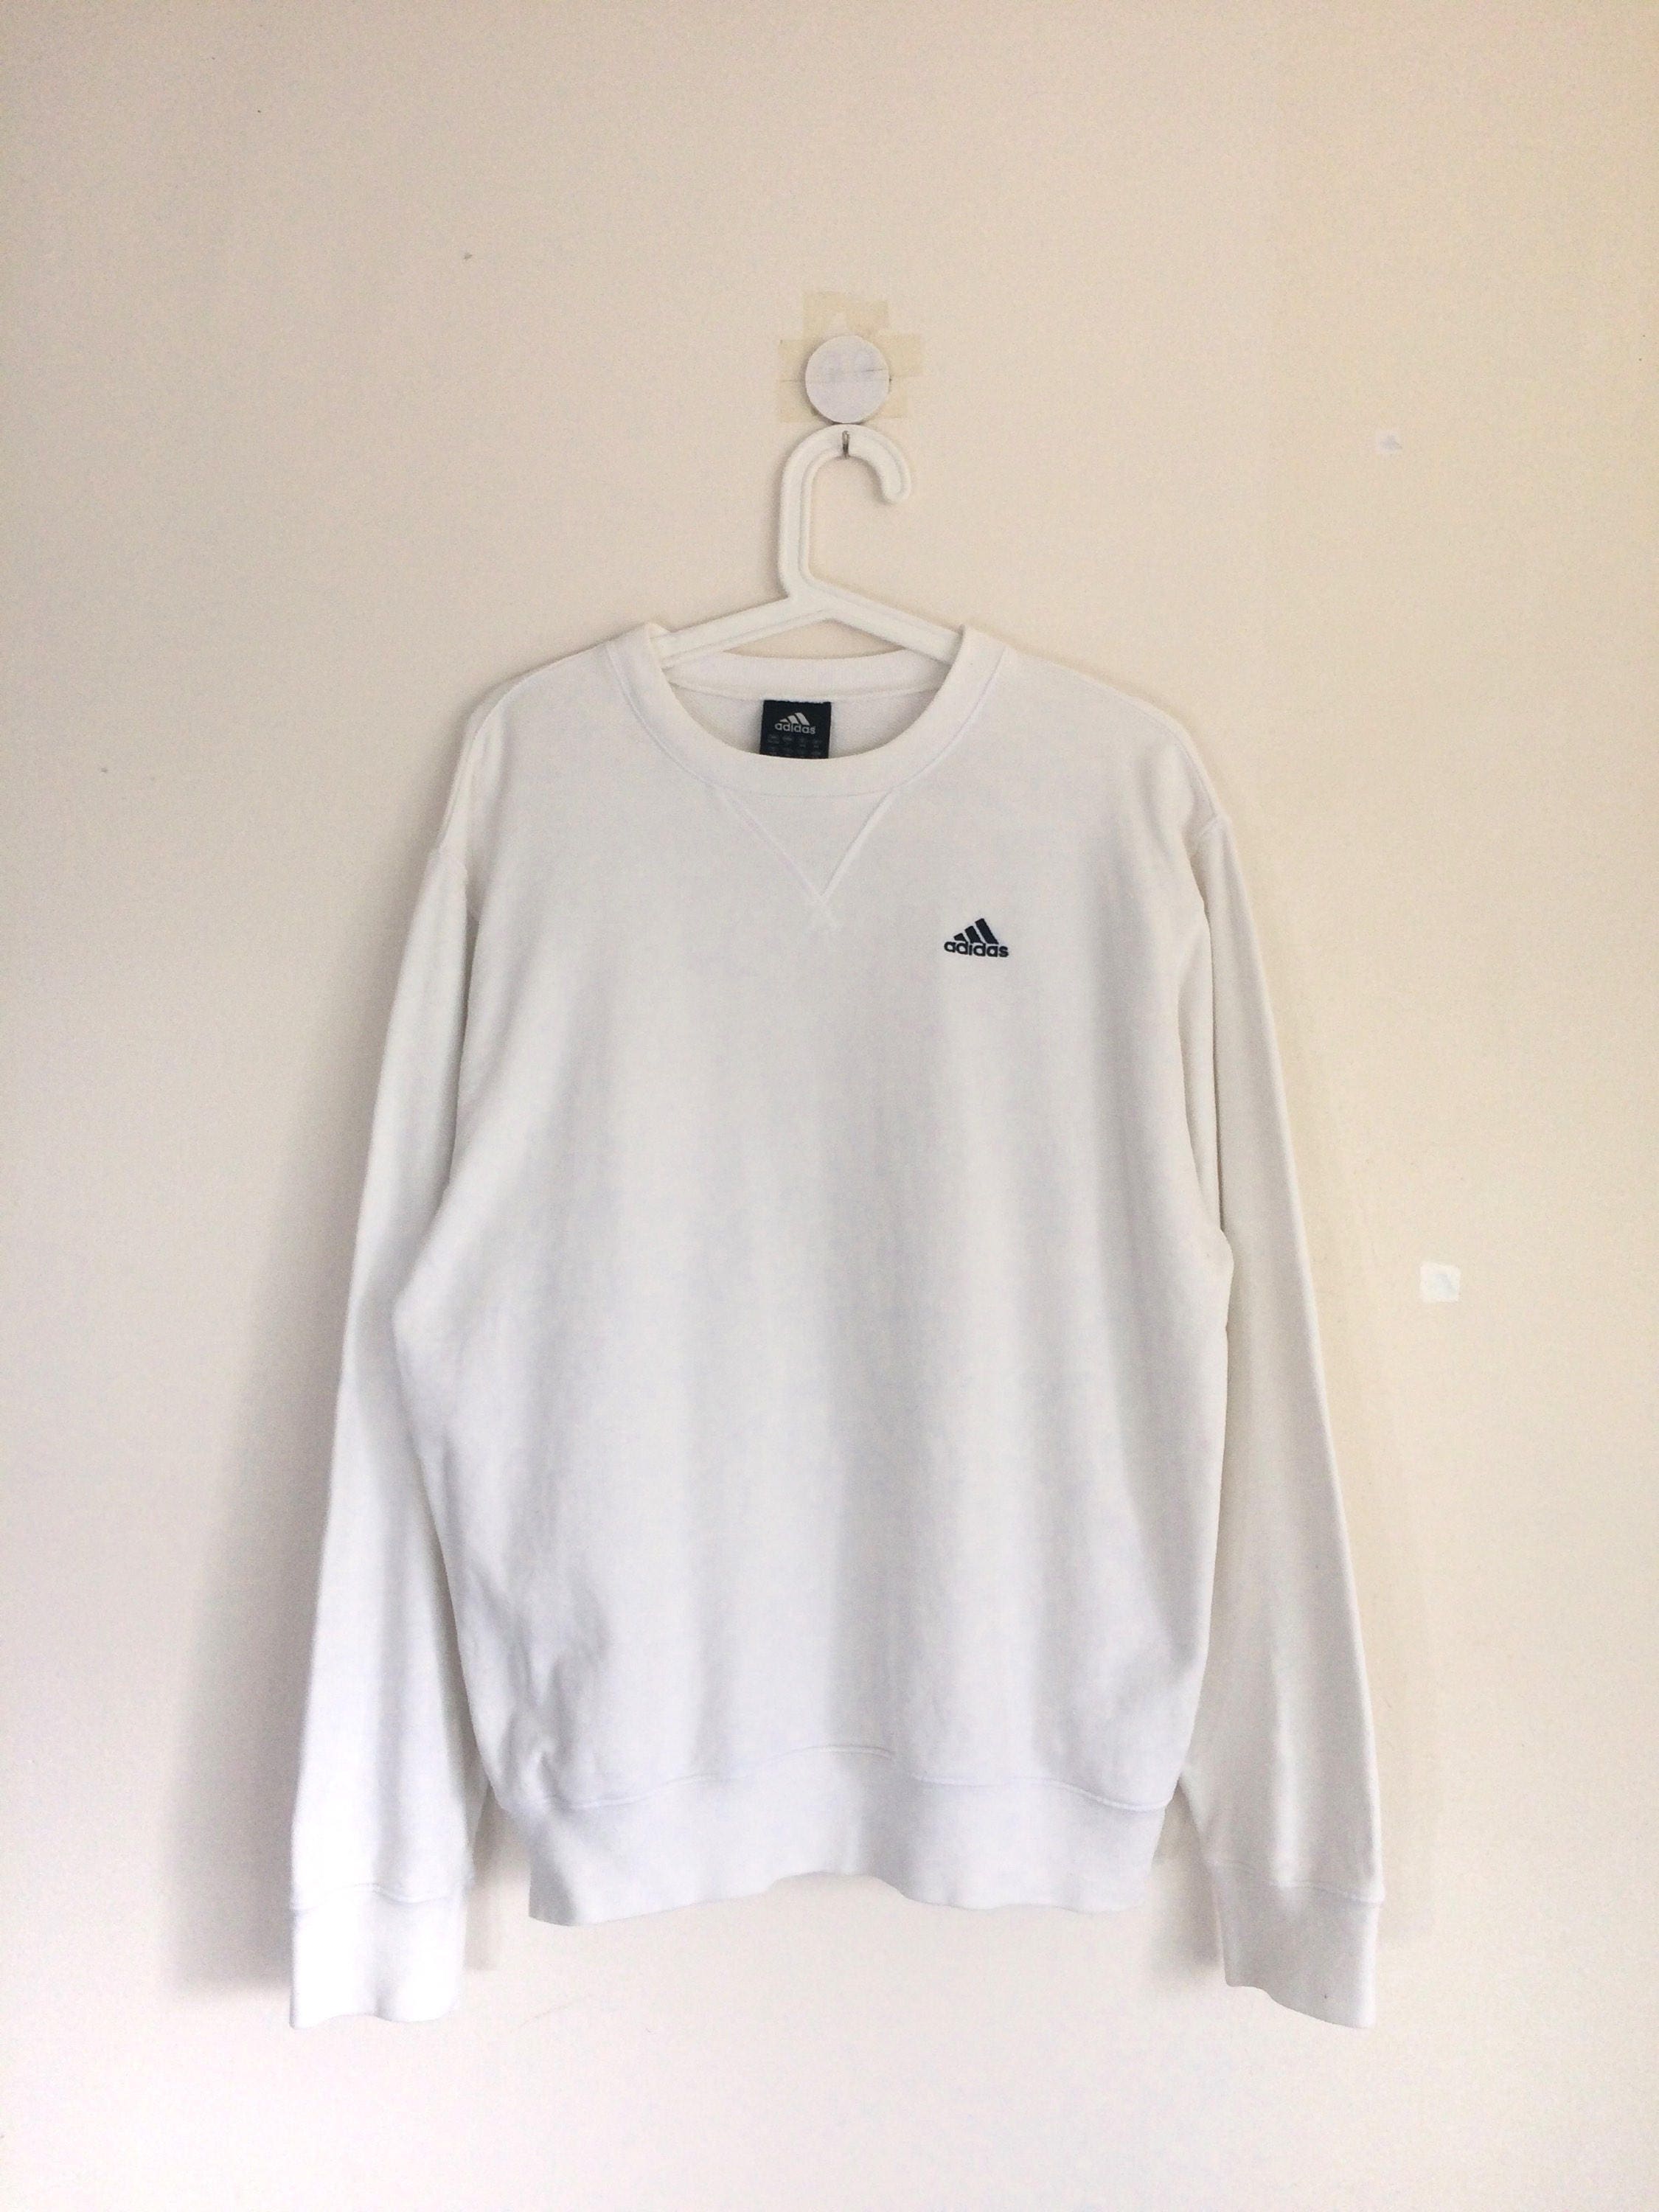 ADIDAS sweatshirt crewneck jumper white color | Etsy